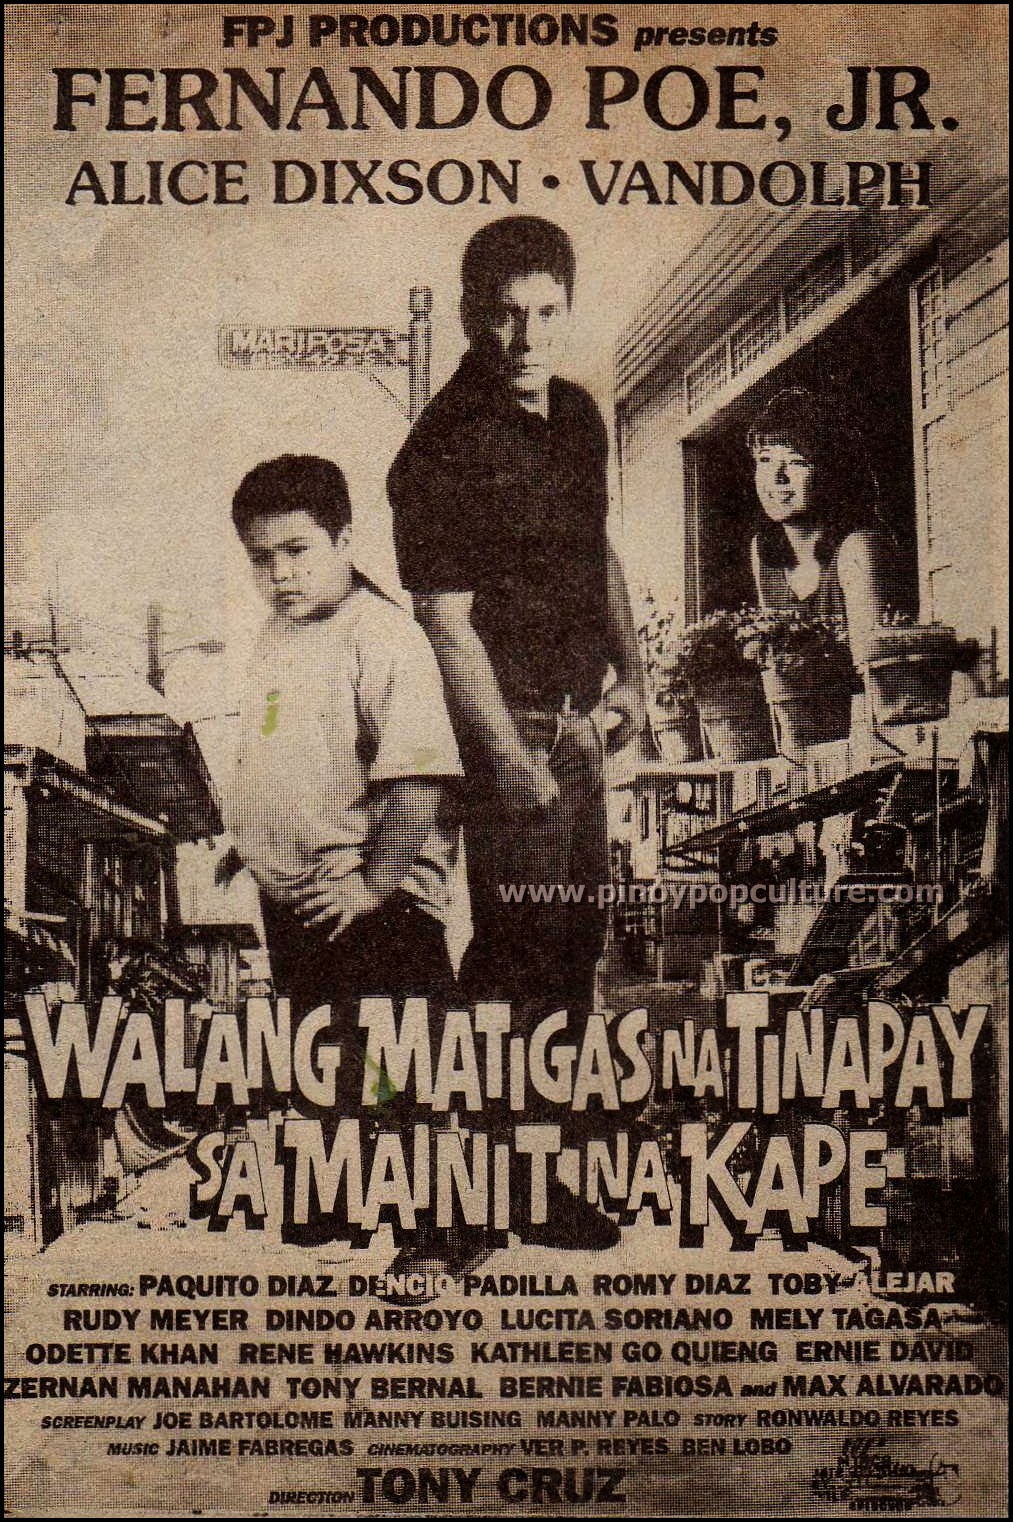 Walang Matigas na Tinapay sa Mainit na Kape, FPJ, Fernando Poe Jr., Vandolph, Alice Dixson